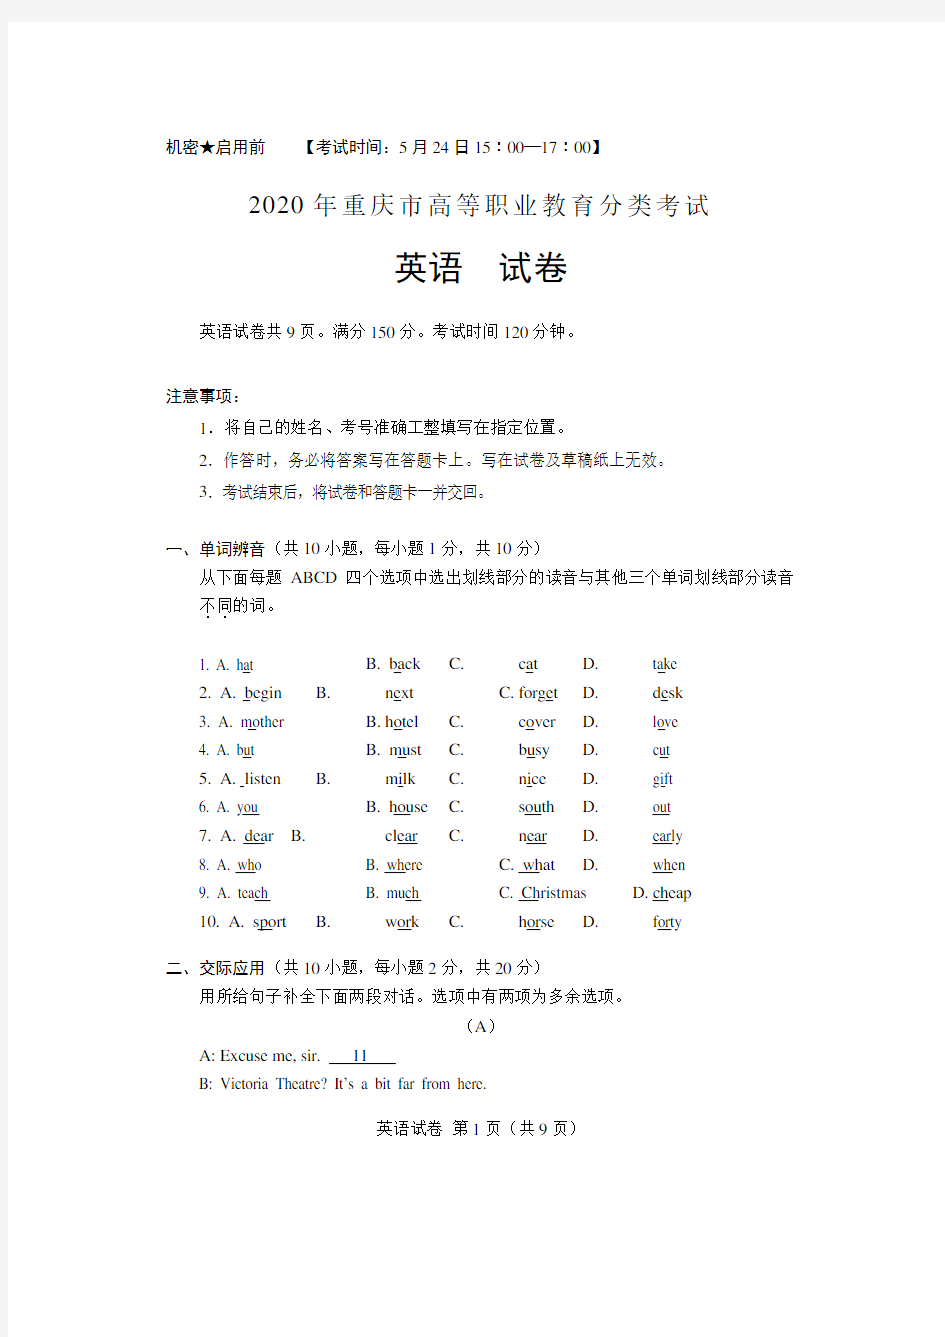 重庆市2020年高职分类考试招生英语试题及答案(重庆市春招考试)